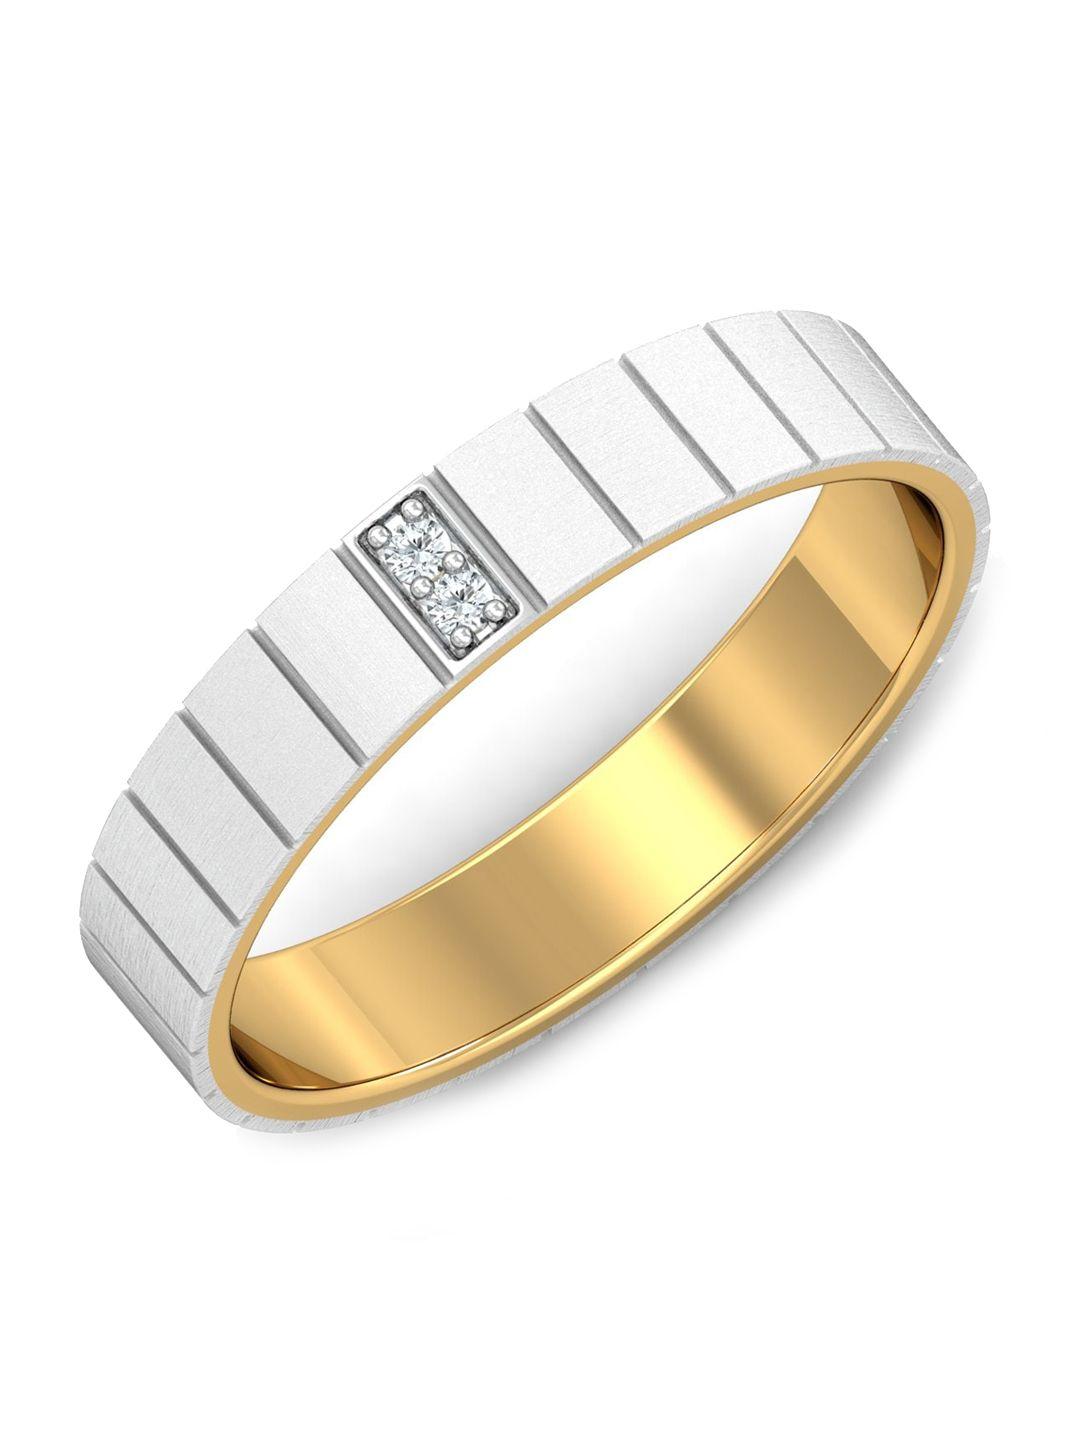 kuberbox men diamond-studded 18kt white gold ring - 4.62 gm